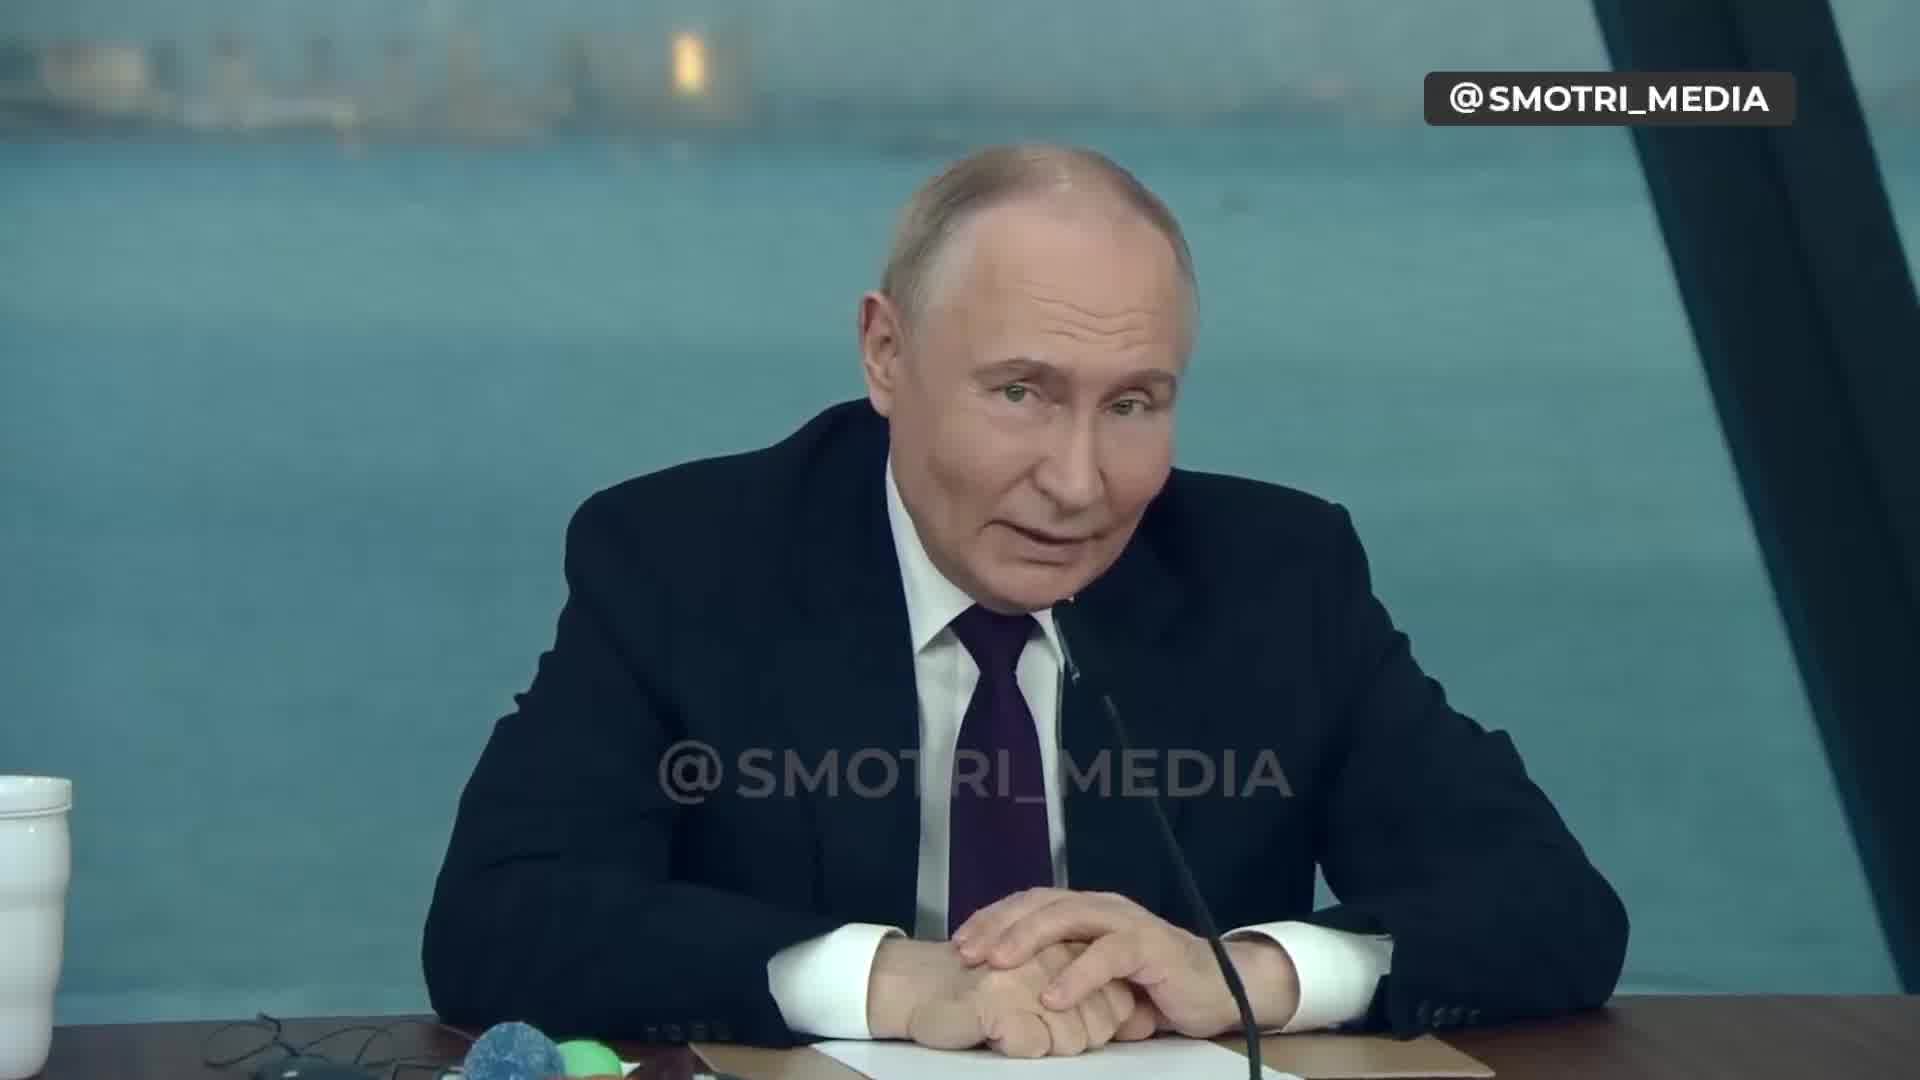 Putin hovorí, že Rusko zvažuje dodanie zbraní tretím aktérom v iných častiach sveta, ktorí zaútočia na krajiny, ktoré dodali zbrane Ukrajine